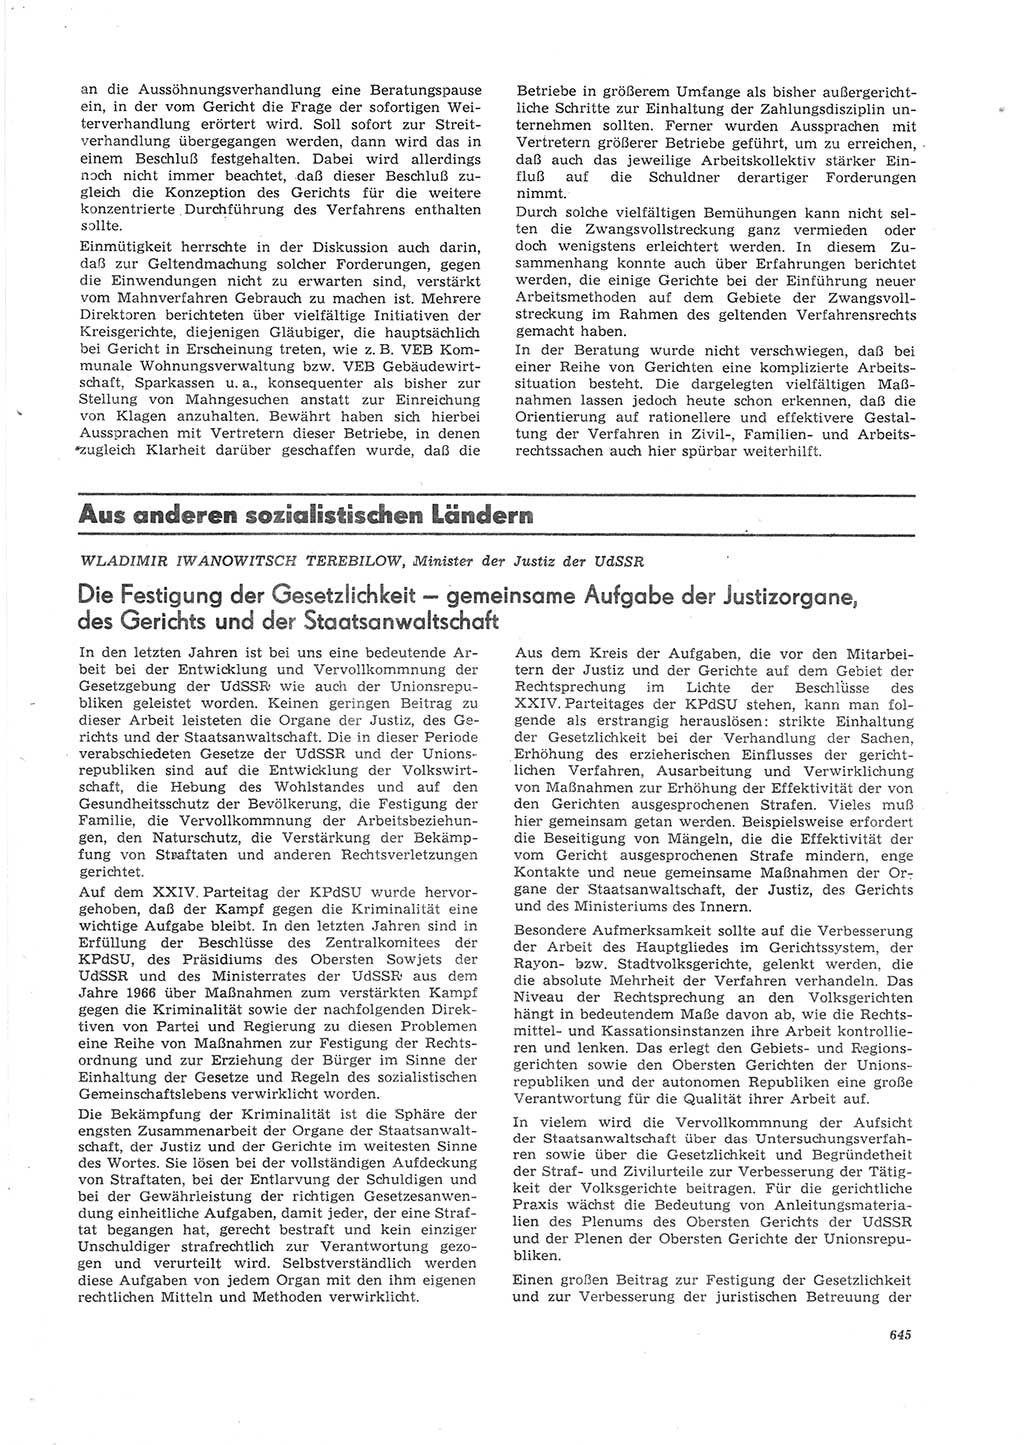 Neue Justiz (NJ), Zeitschrift für Recht und Rechtswissenschaft [Deutsche Demokratische Republik (DDR)], 26. Jahrgang 1972, Seite 645 (NJ DDR 1972, S. 645)